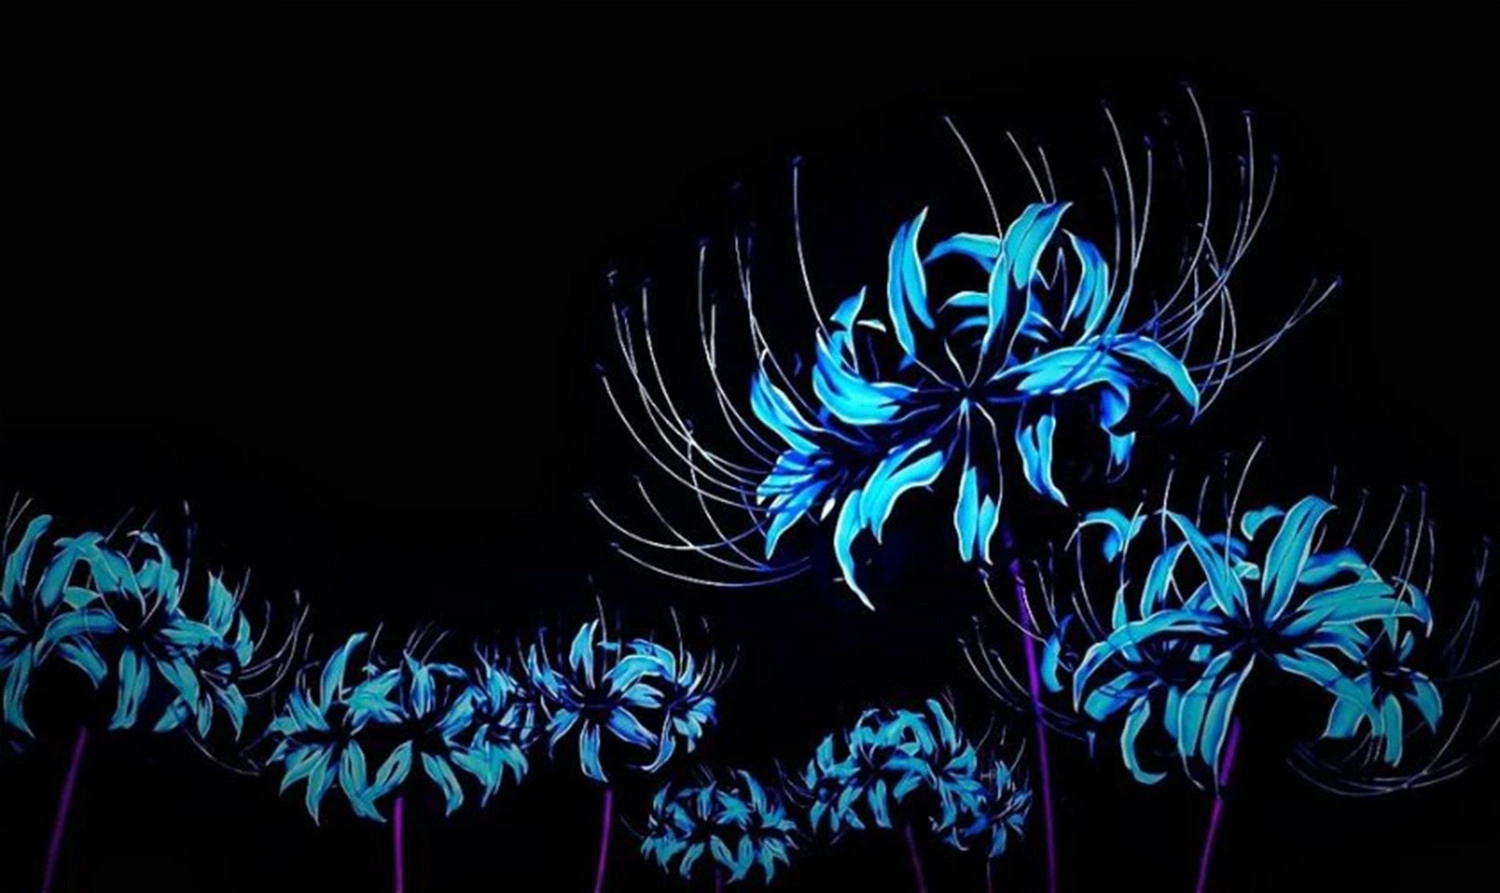  Hình ảnh nền nhiều nhành hoa bỉ ngạn xanh rớt đường nét 4K phong thái anime